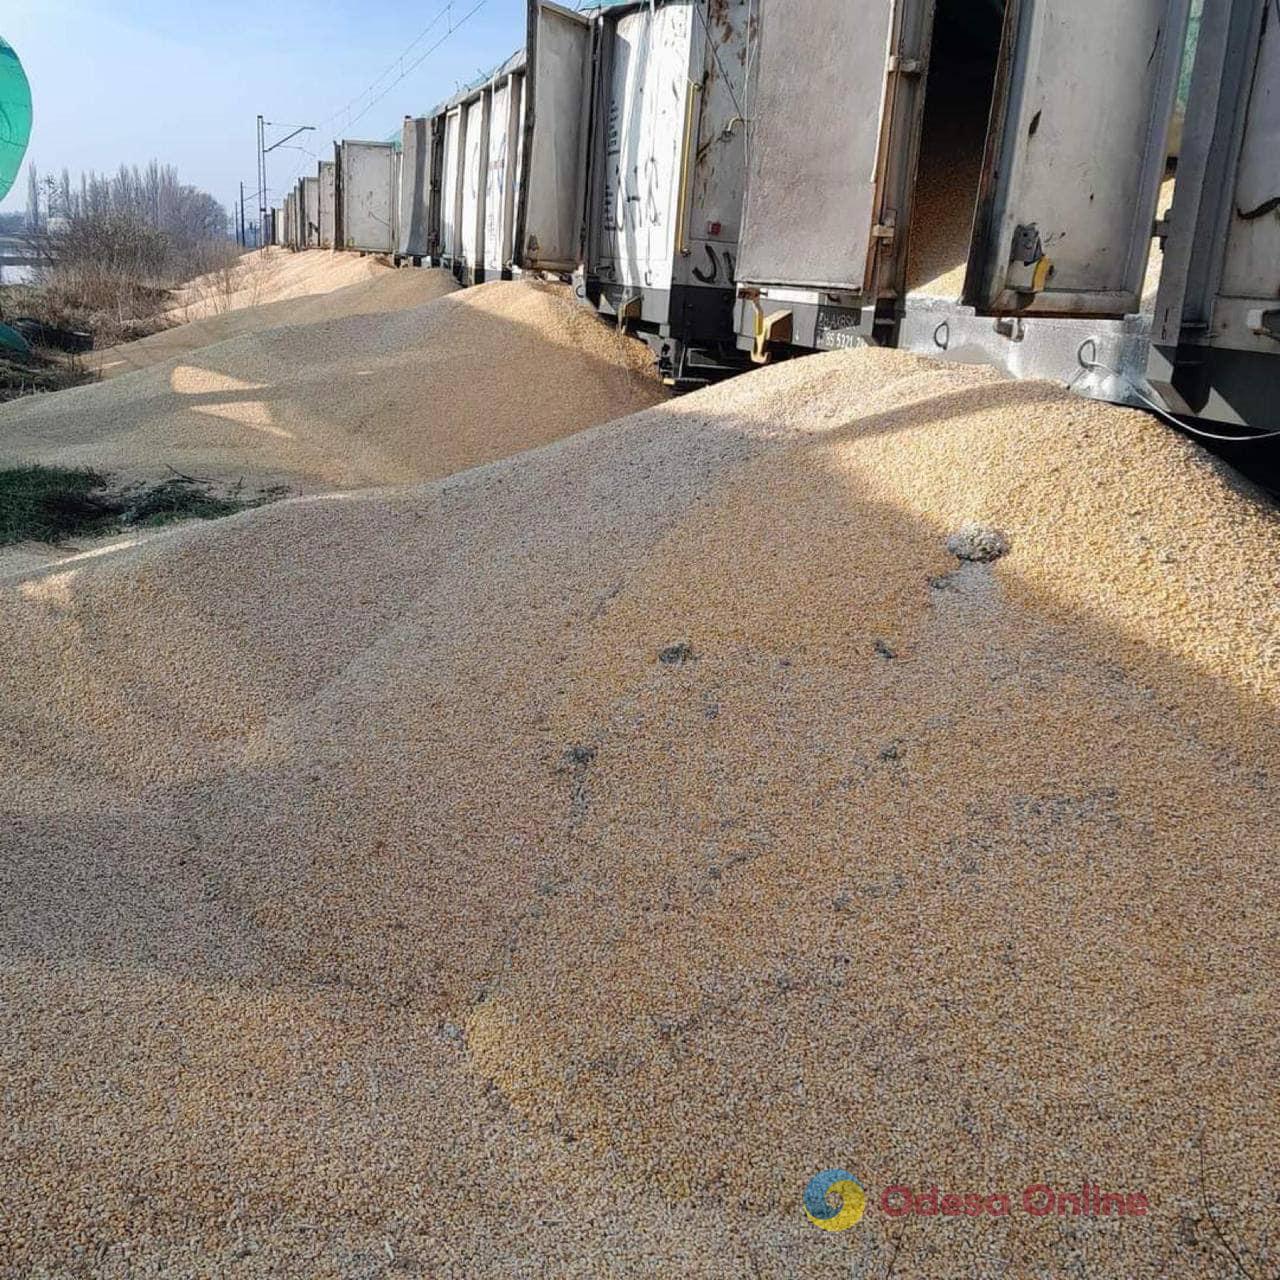 На польской железнодорожной станции высыпали 160 тонн украинского зерна (фото)